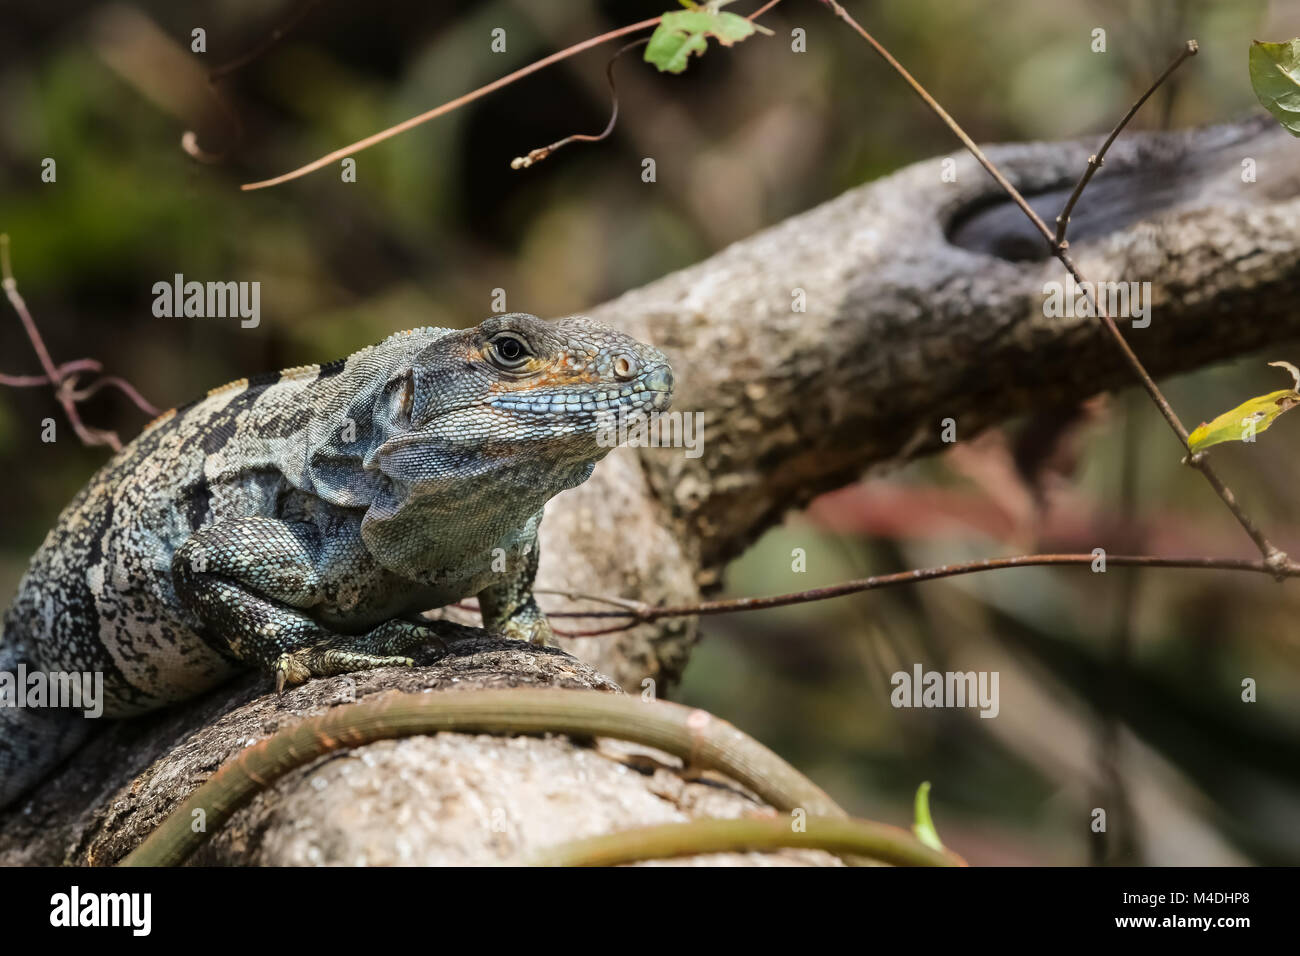 Black spiny tailed iguana on a branch Stock Photo